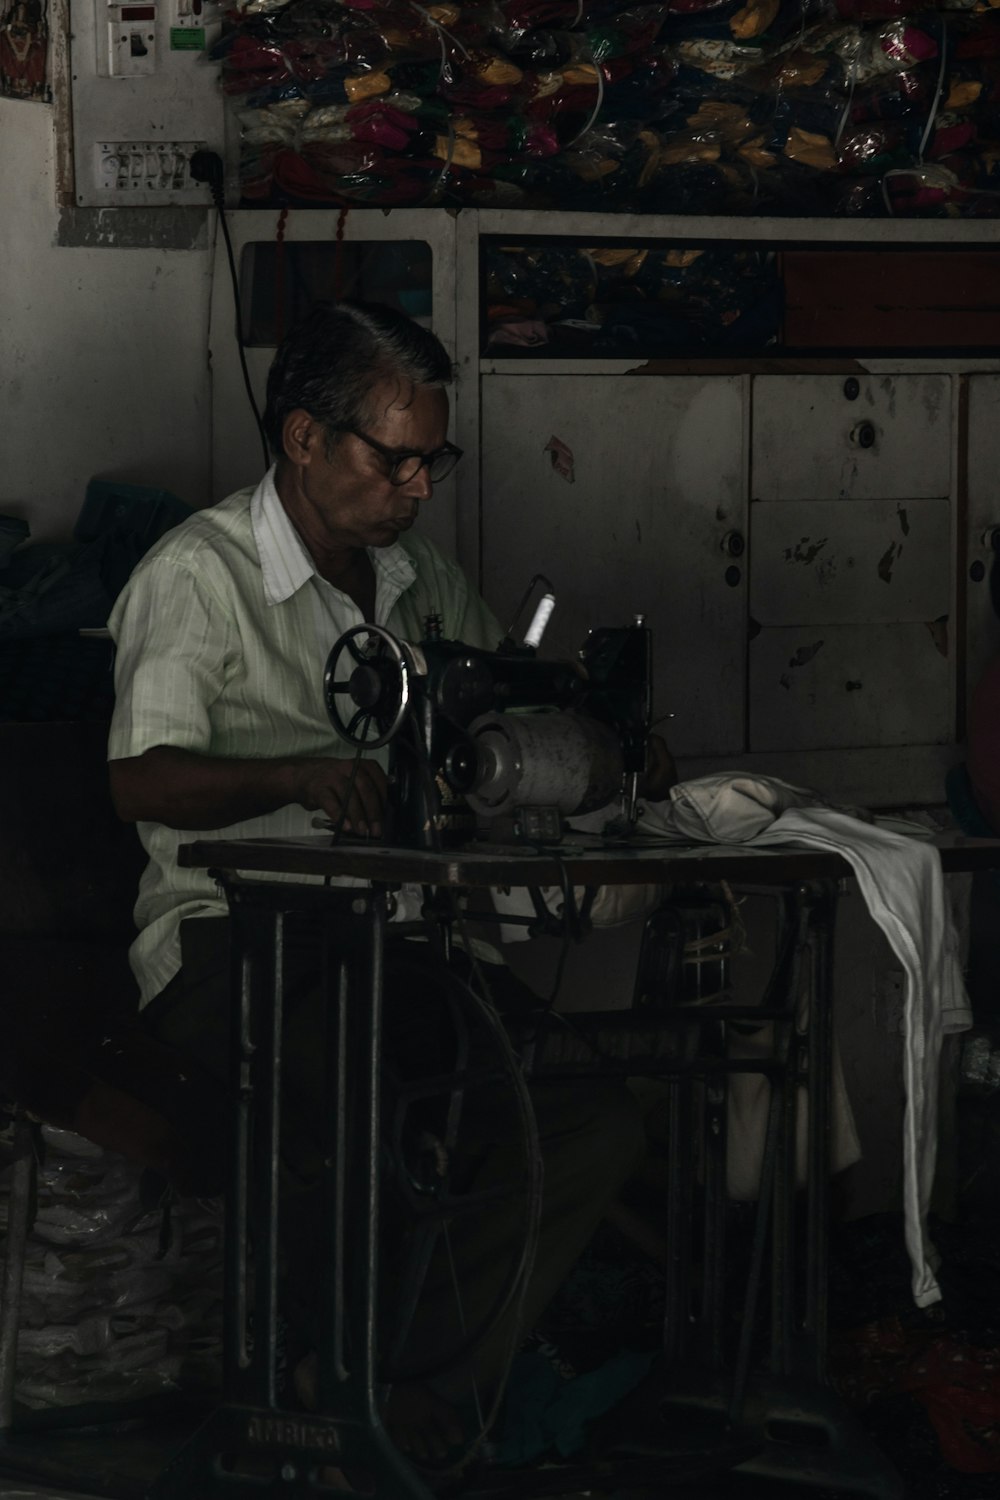 homme assis sur une chaise travaillant sur une machine à coudre